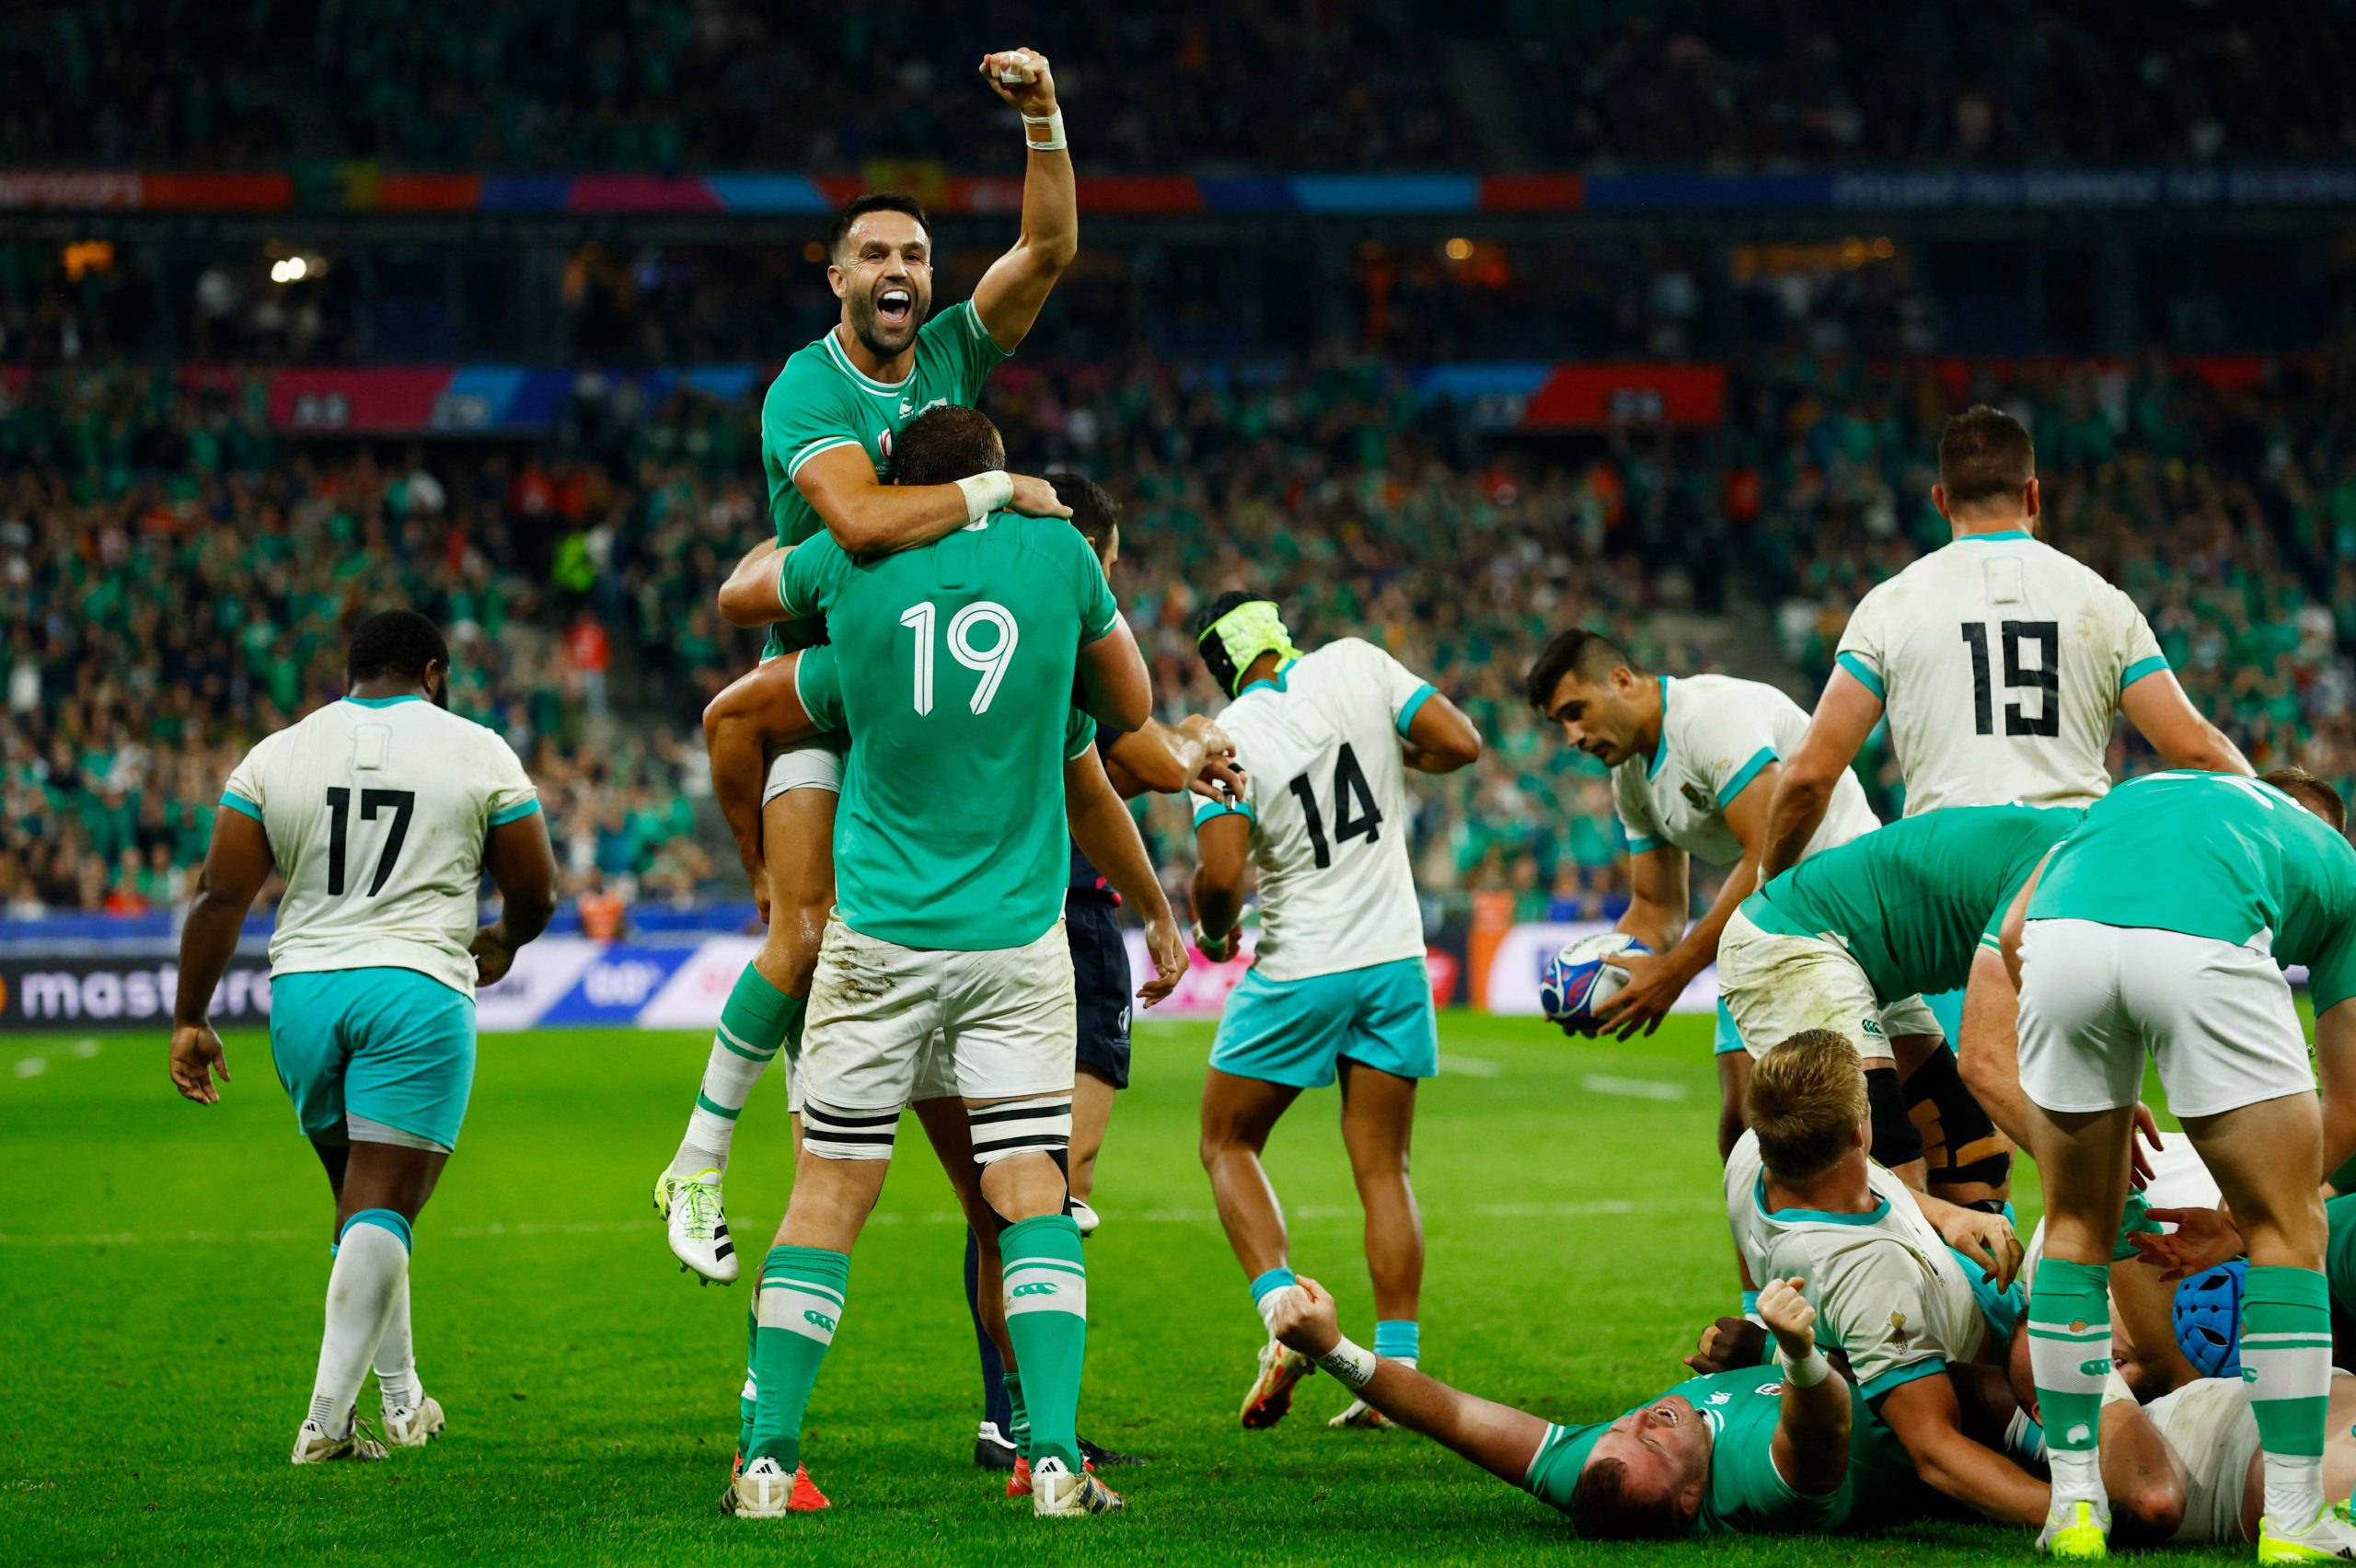 Ireland celebrate against Springboks